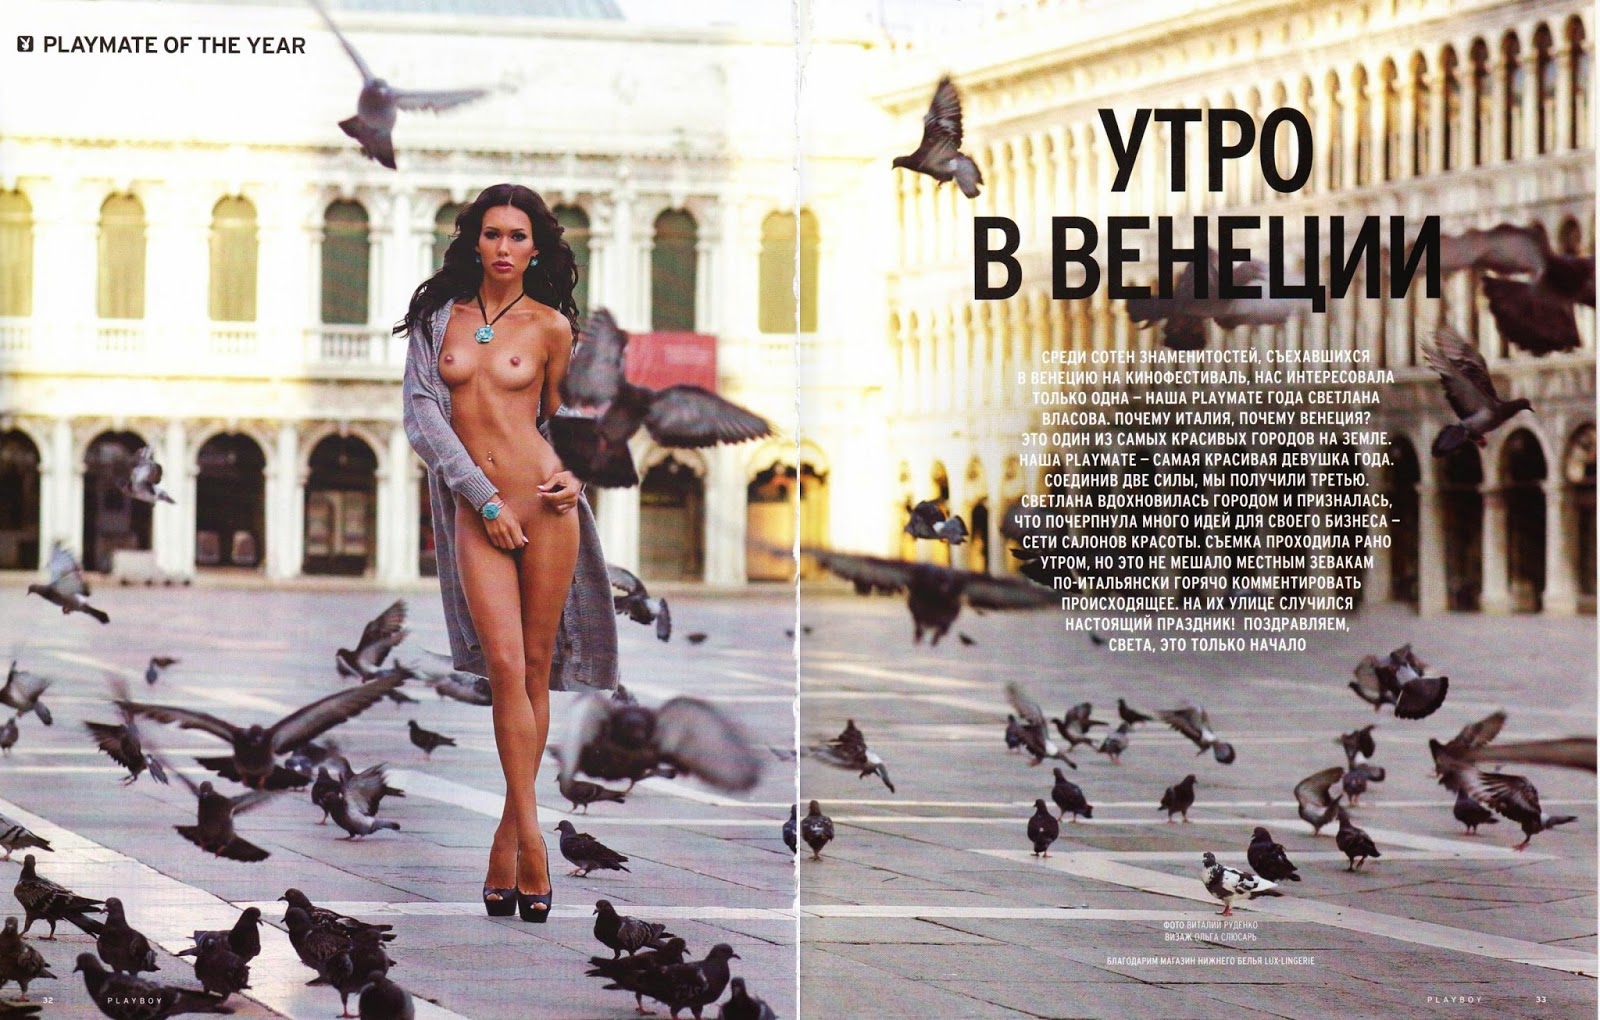   - Playboy November 2014 (11-2014) Ukraine ...